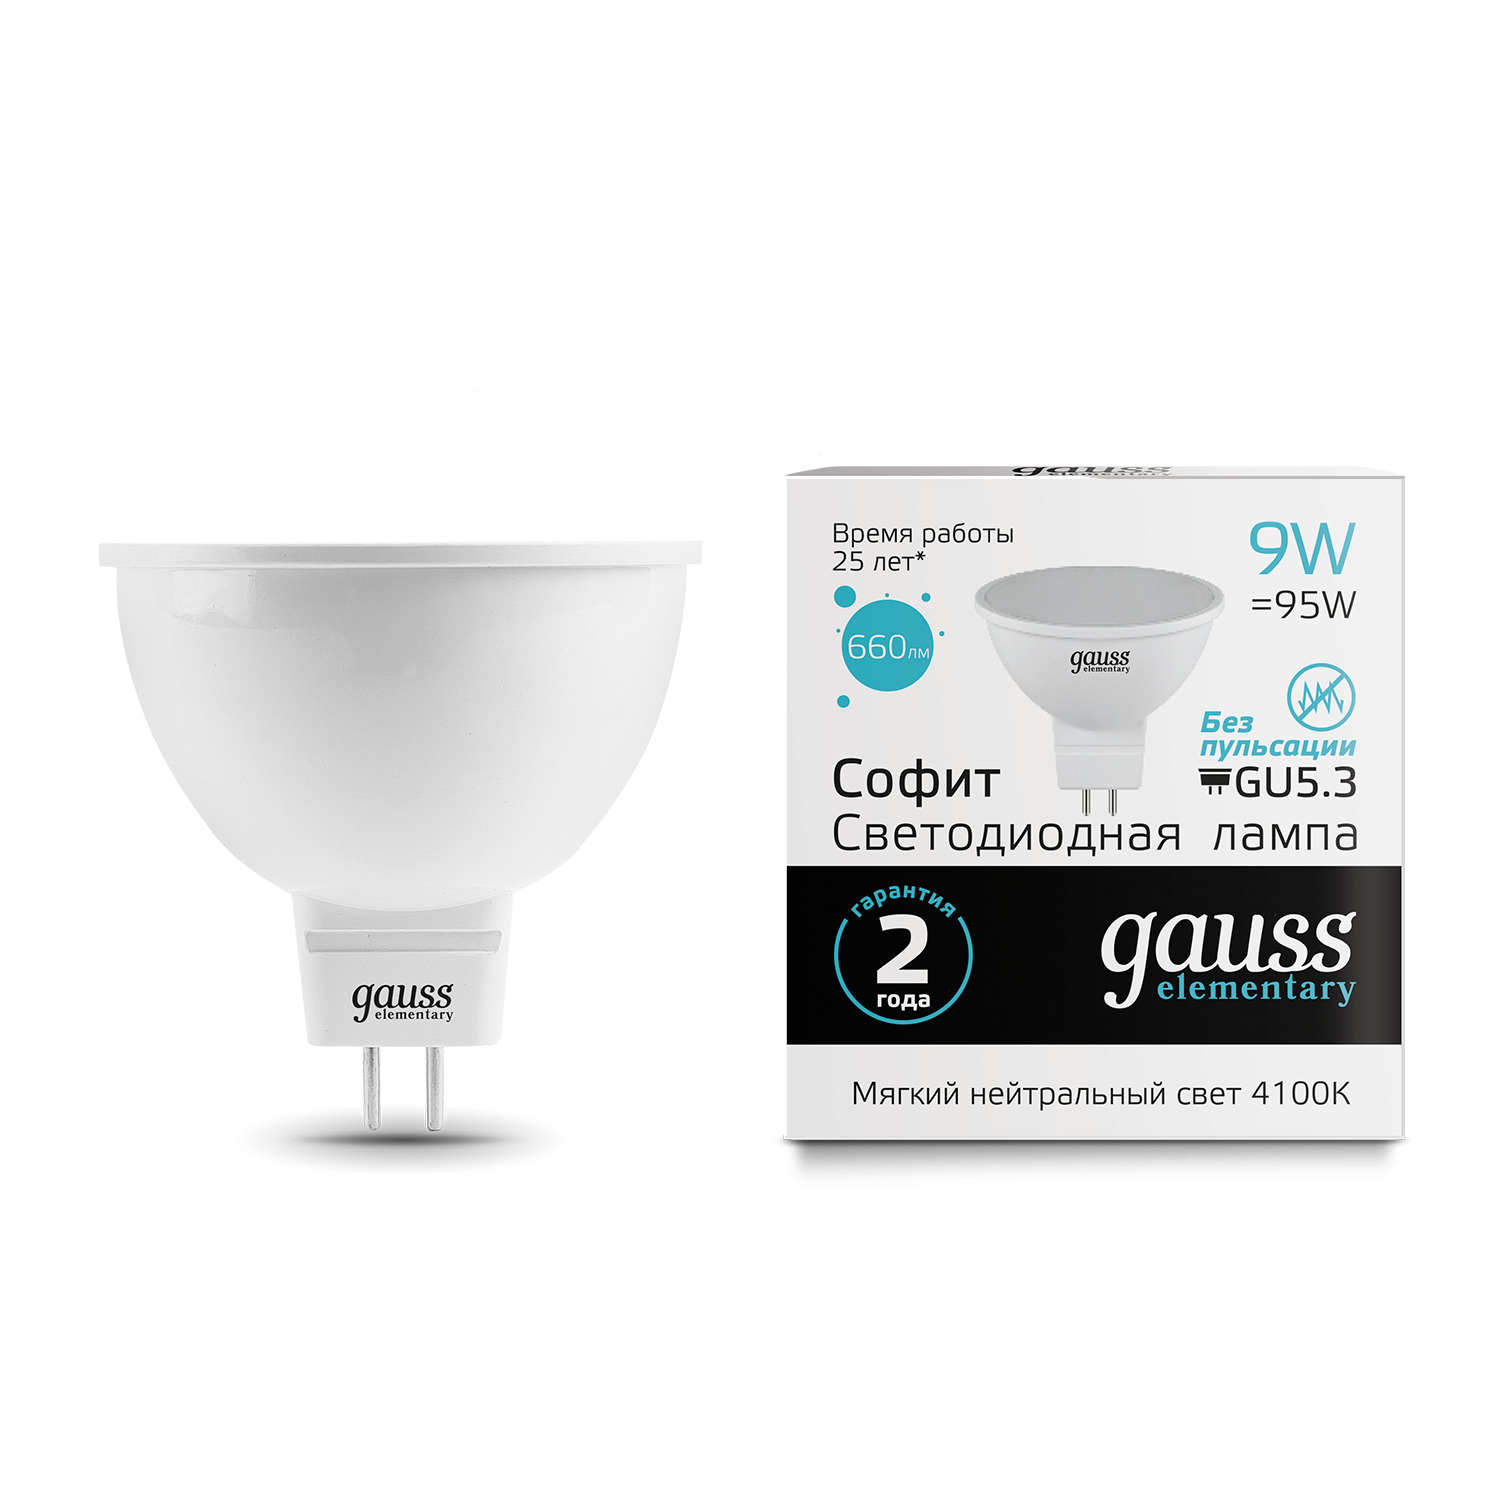 Лампа Gauss LED Elementary MR16 GU5.3 9W 4100K gauss led mr16 gu5 3 5w 12v 4100k 1 10 100